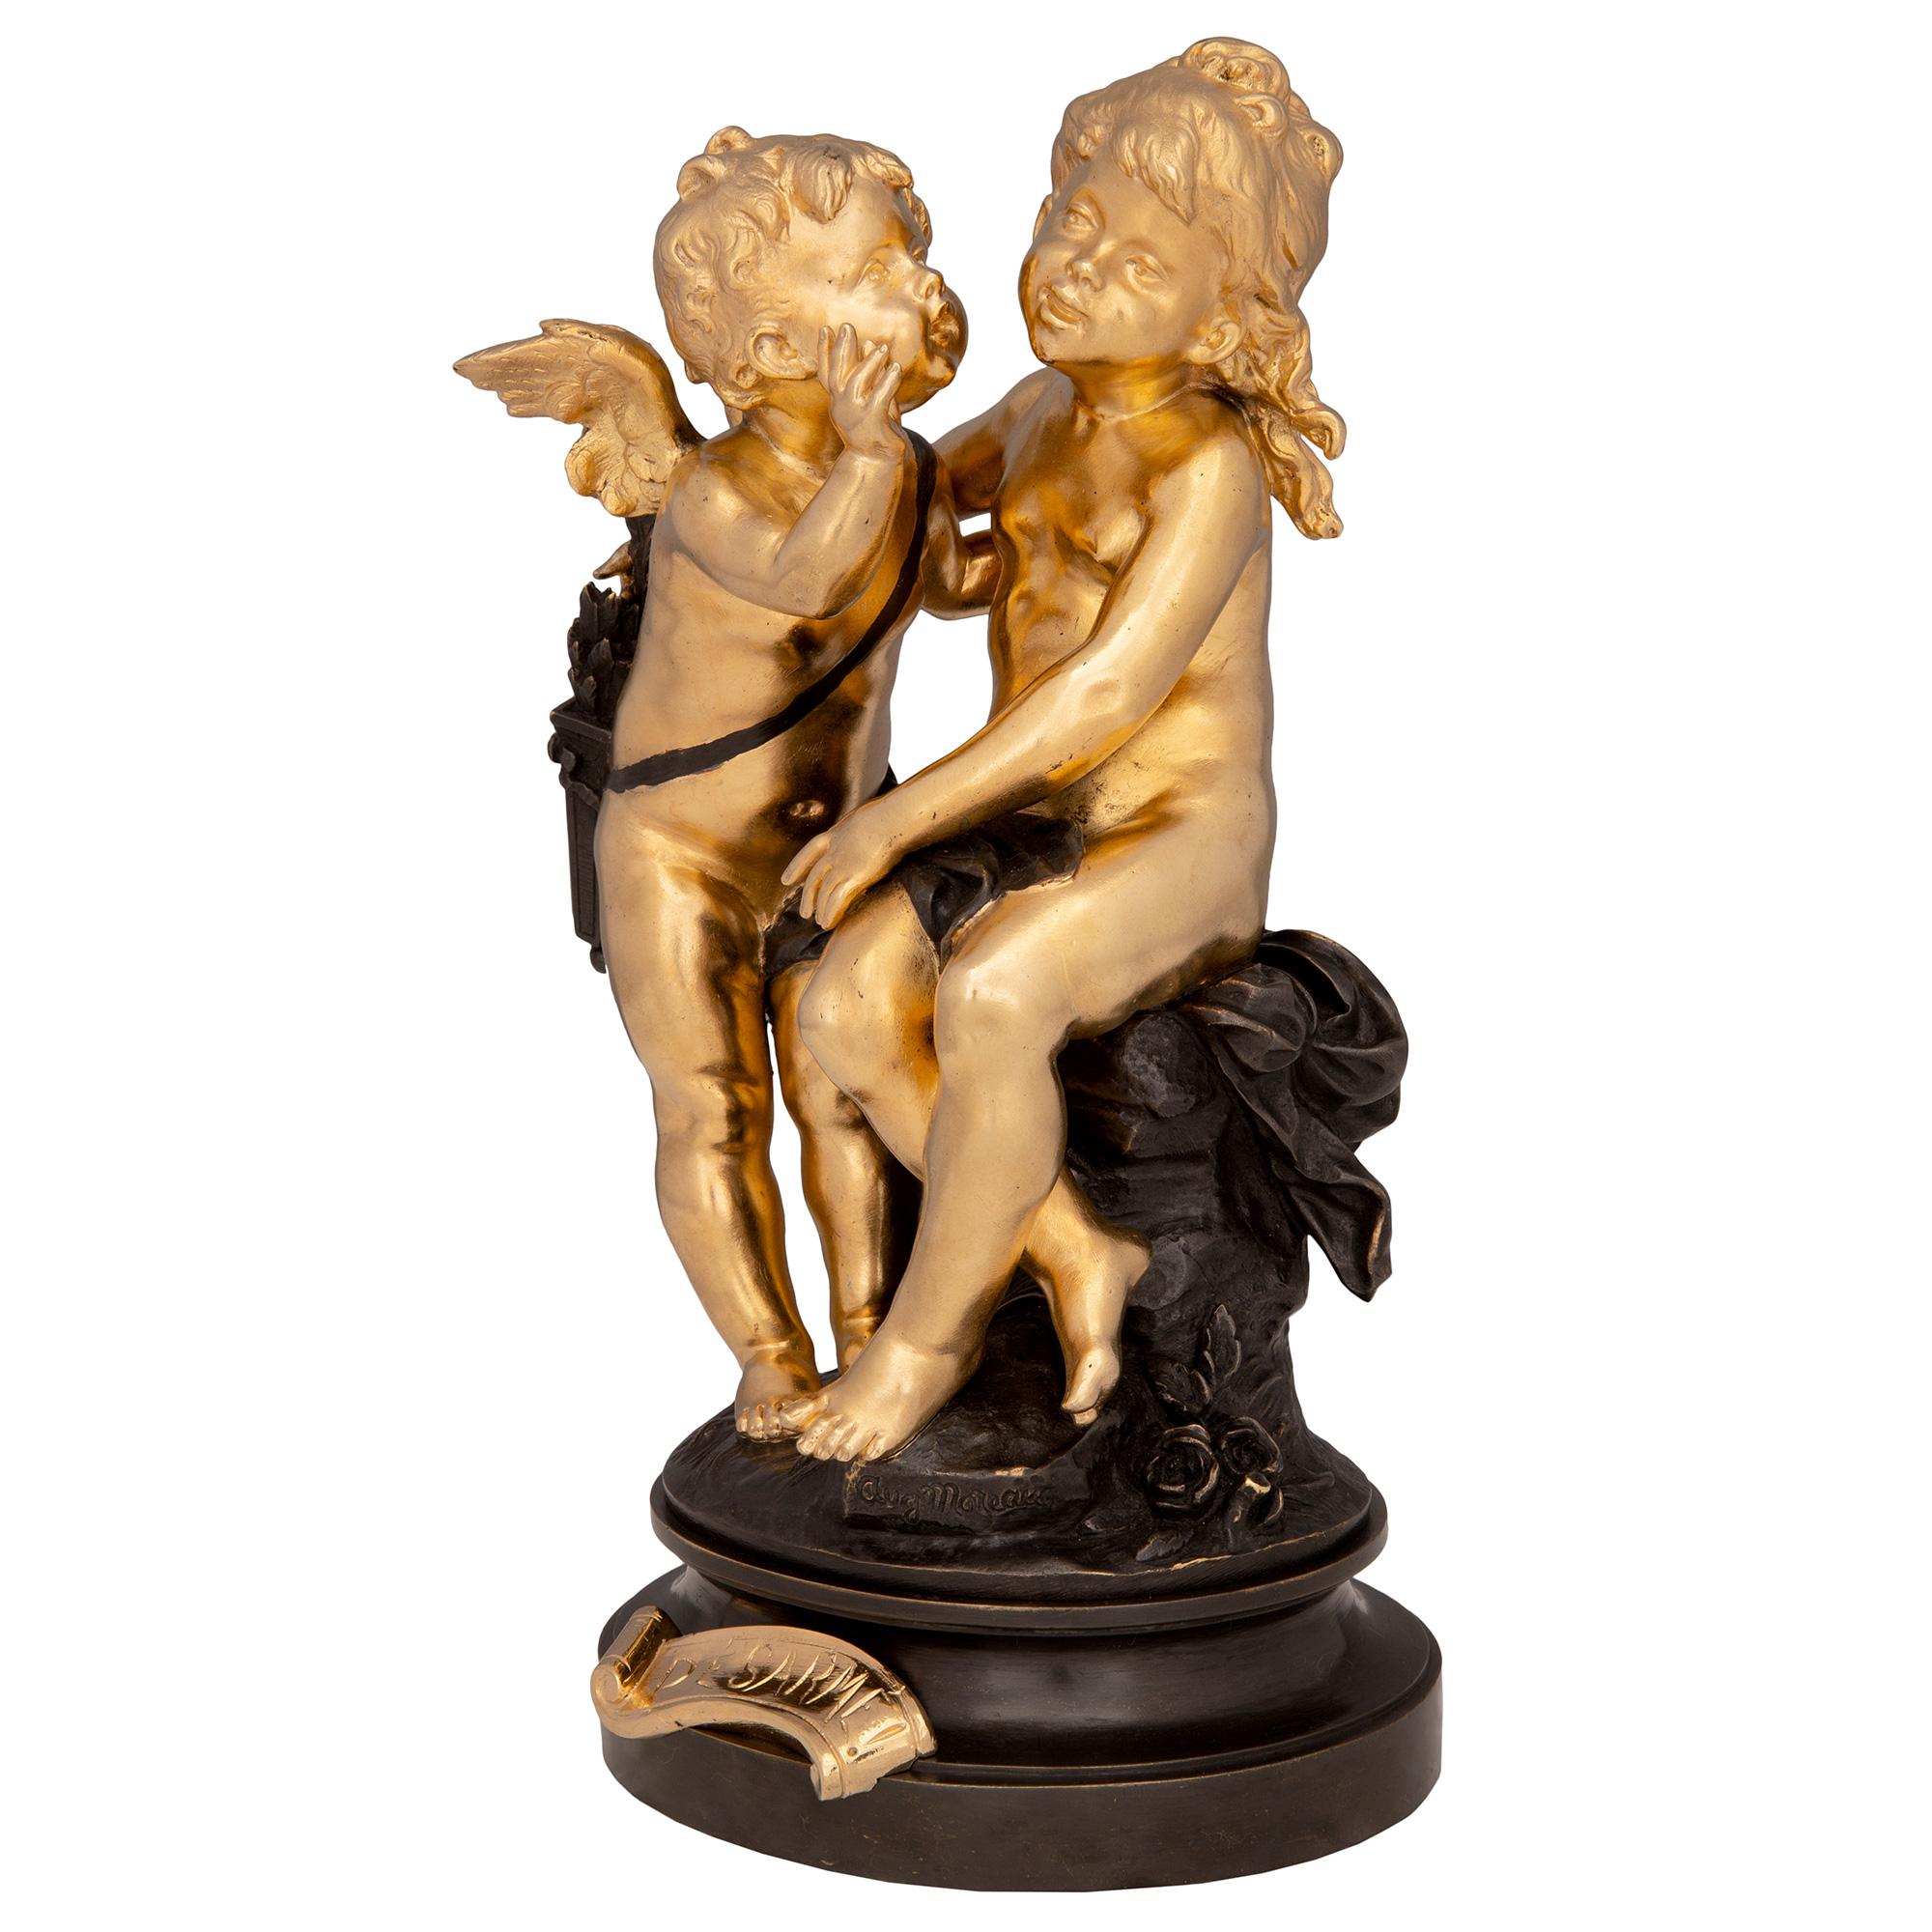 Charmante statue en bronze doré et patiné de style Louis XVI, datant du XIXe siècle, représentant le jeune Cupidon et Psyché, intitulée 